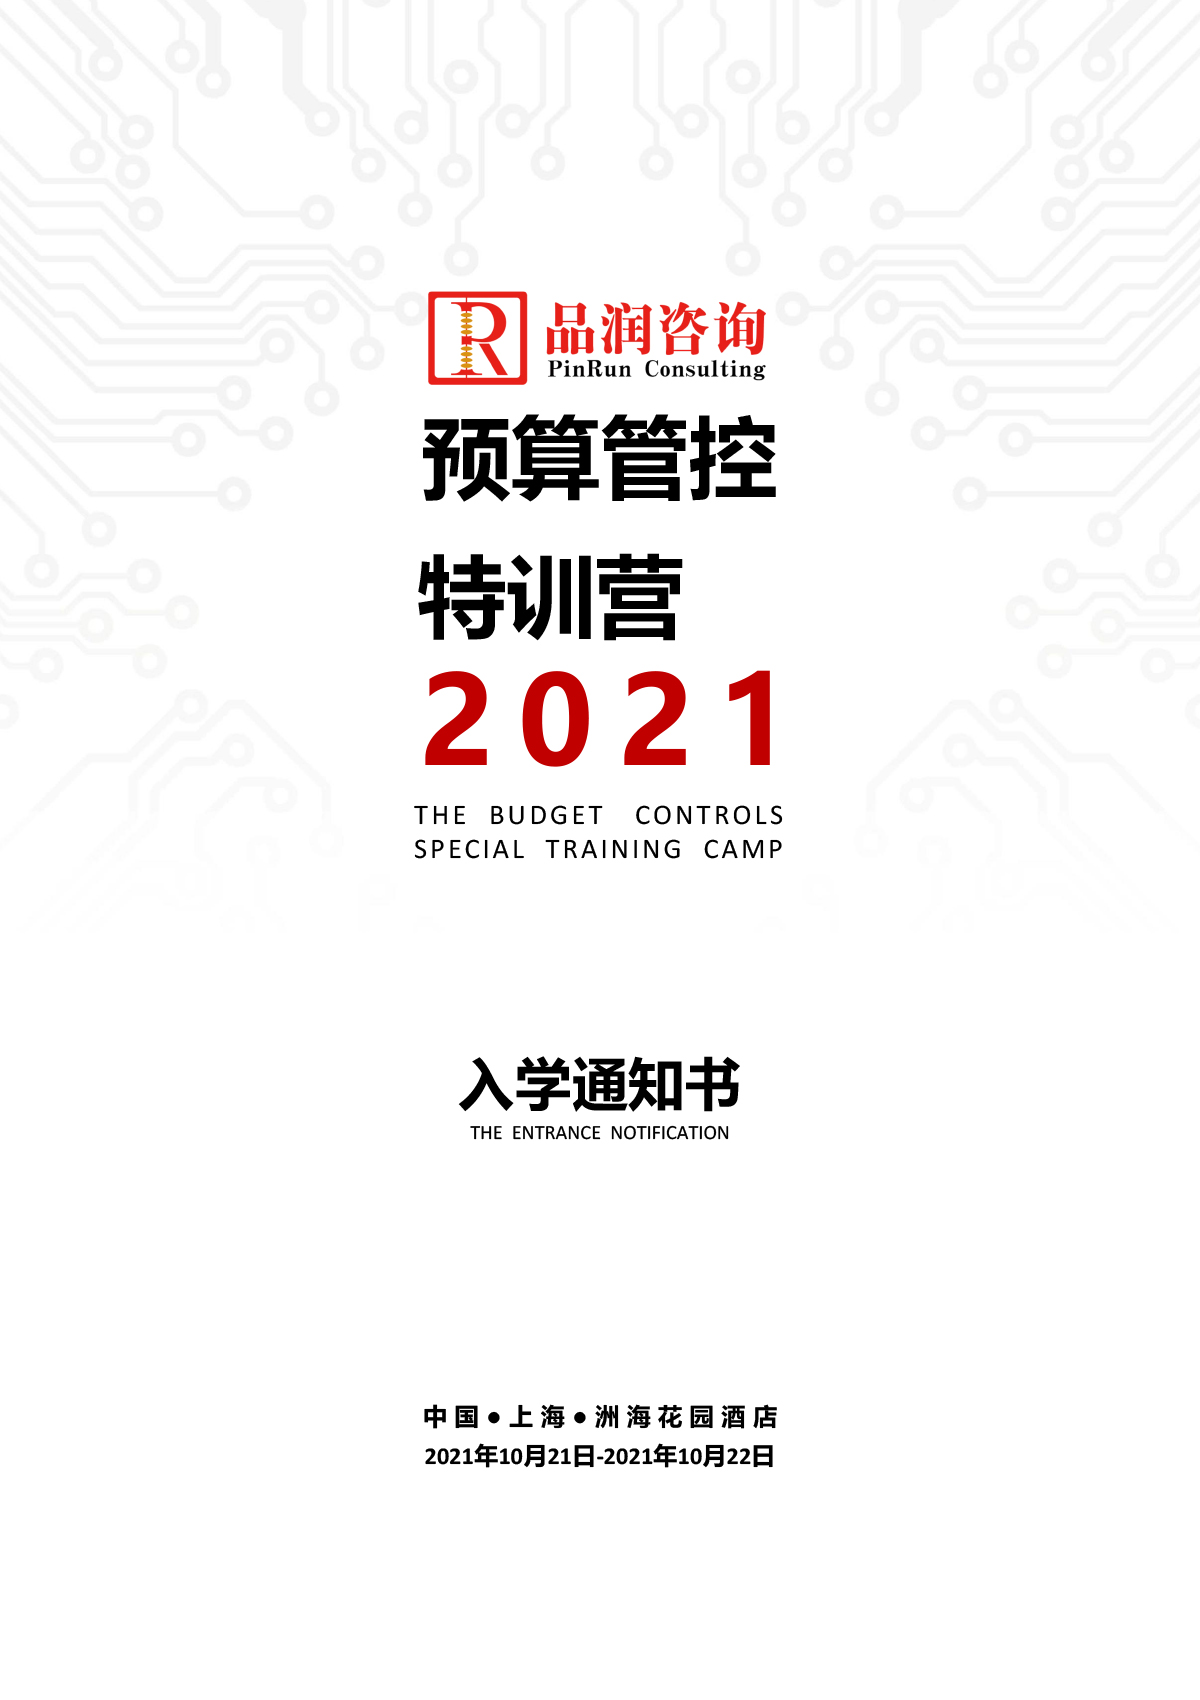 2021.10.21-22上海第126期《预算管控特训营》特训营入学通知书